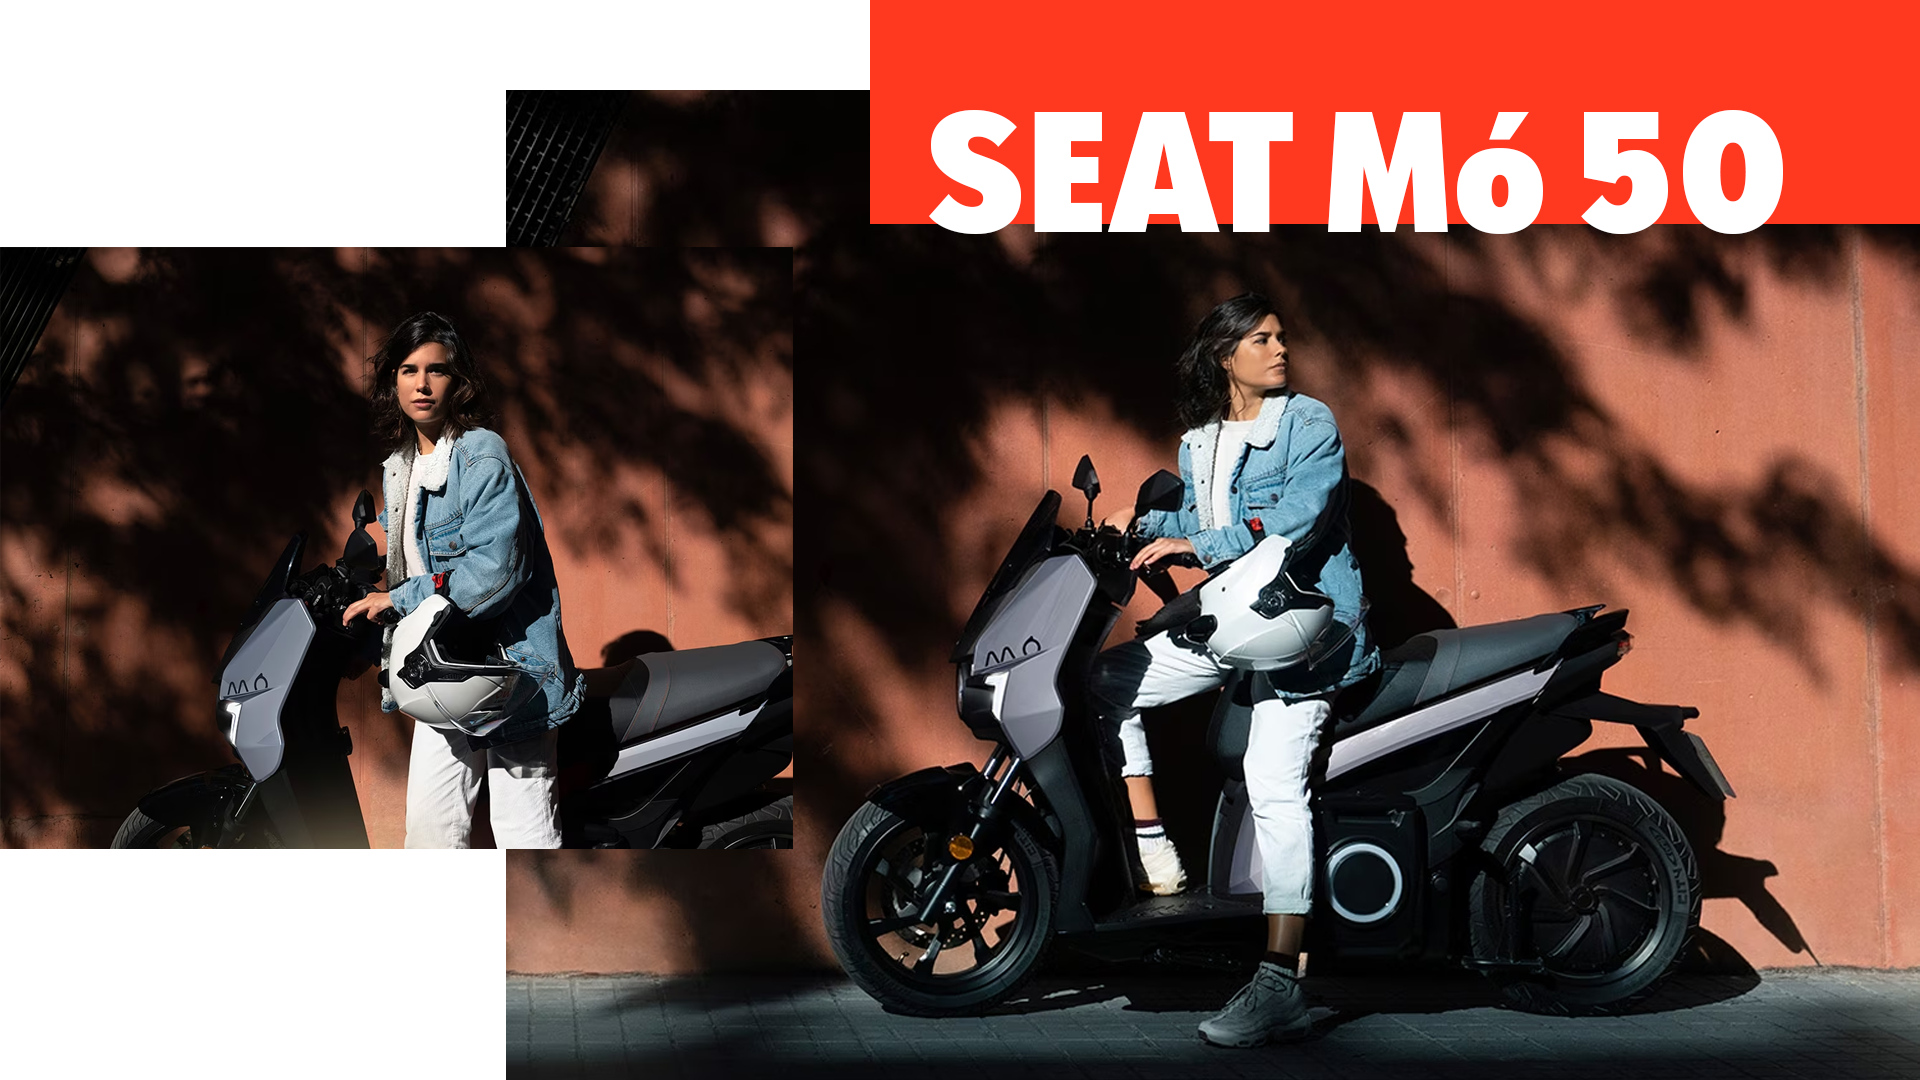 SEAT Mo 50 - Le scooter électrique pour aller toujours plus loin aux technologies des plus grands. La sécurité reste notre priorité.